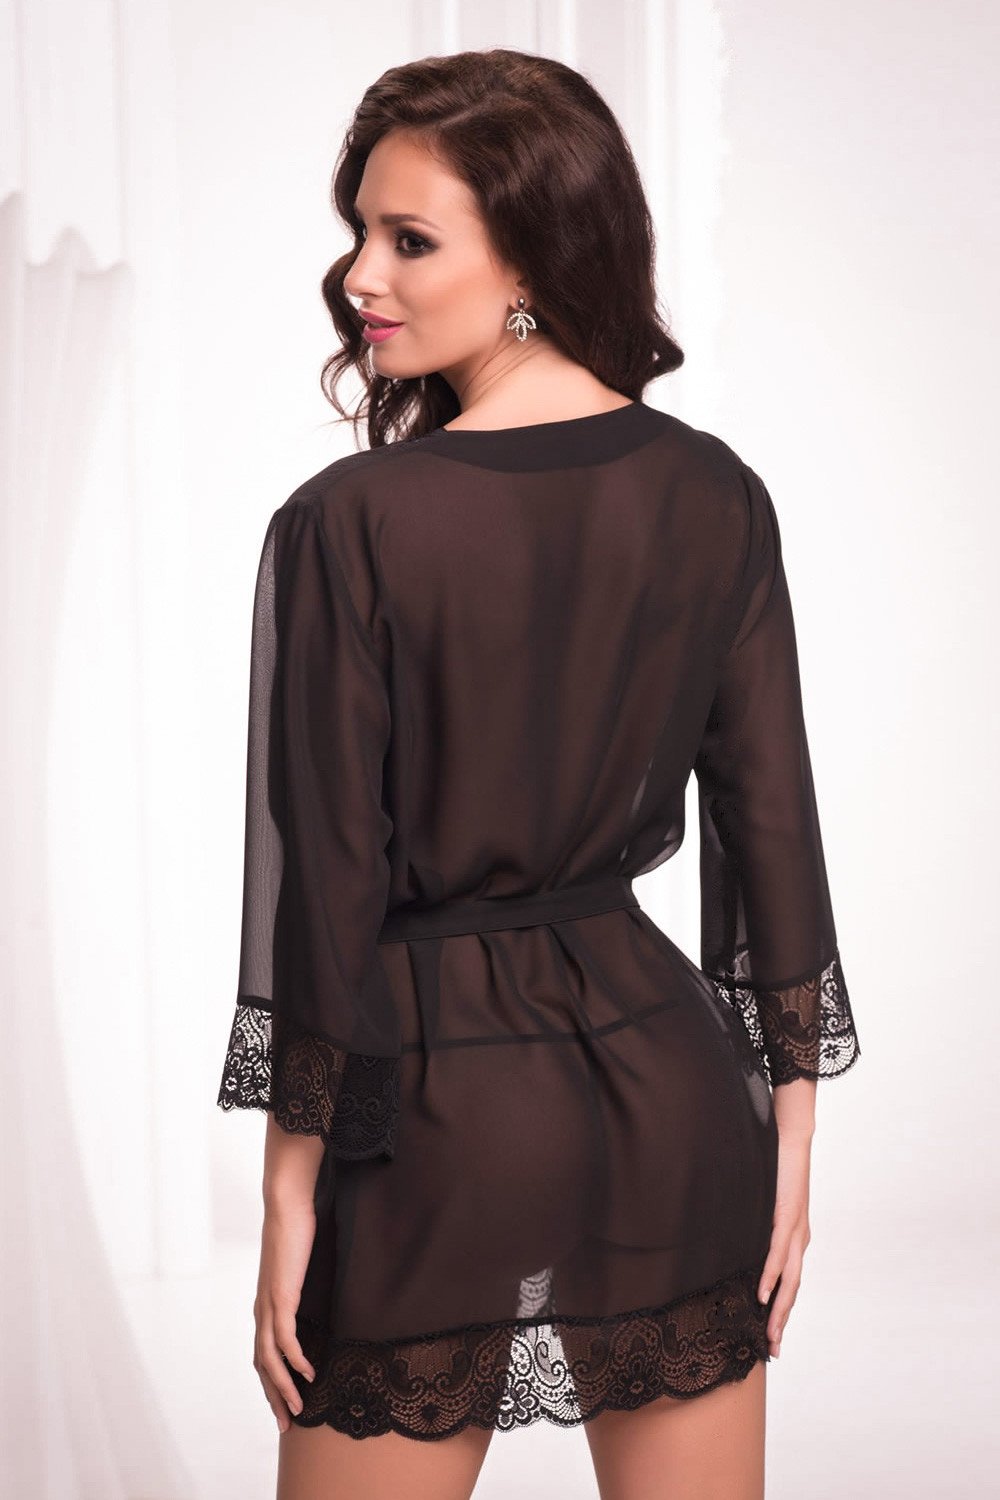 Black Boudoir Dressing Gown, Burlesque Robe, Sheer Robe Long Sleeves - Etsy